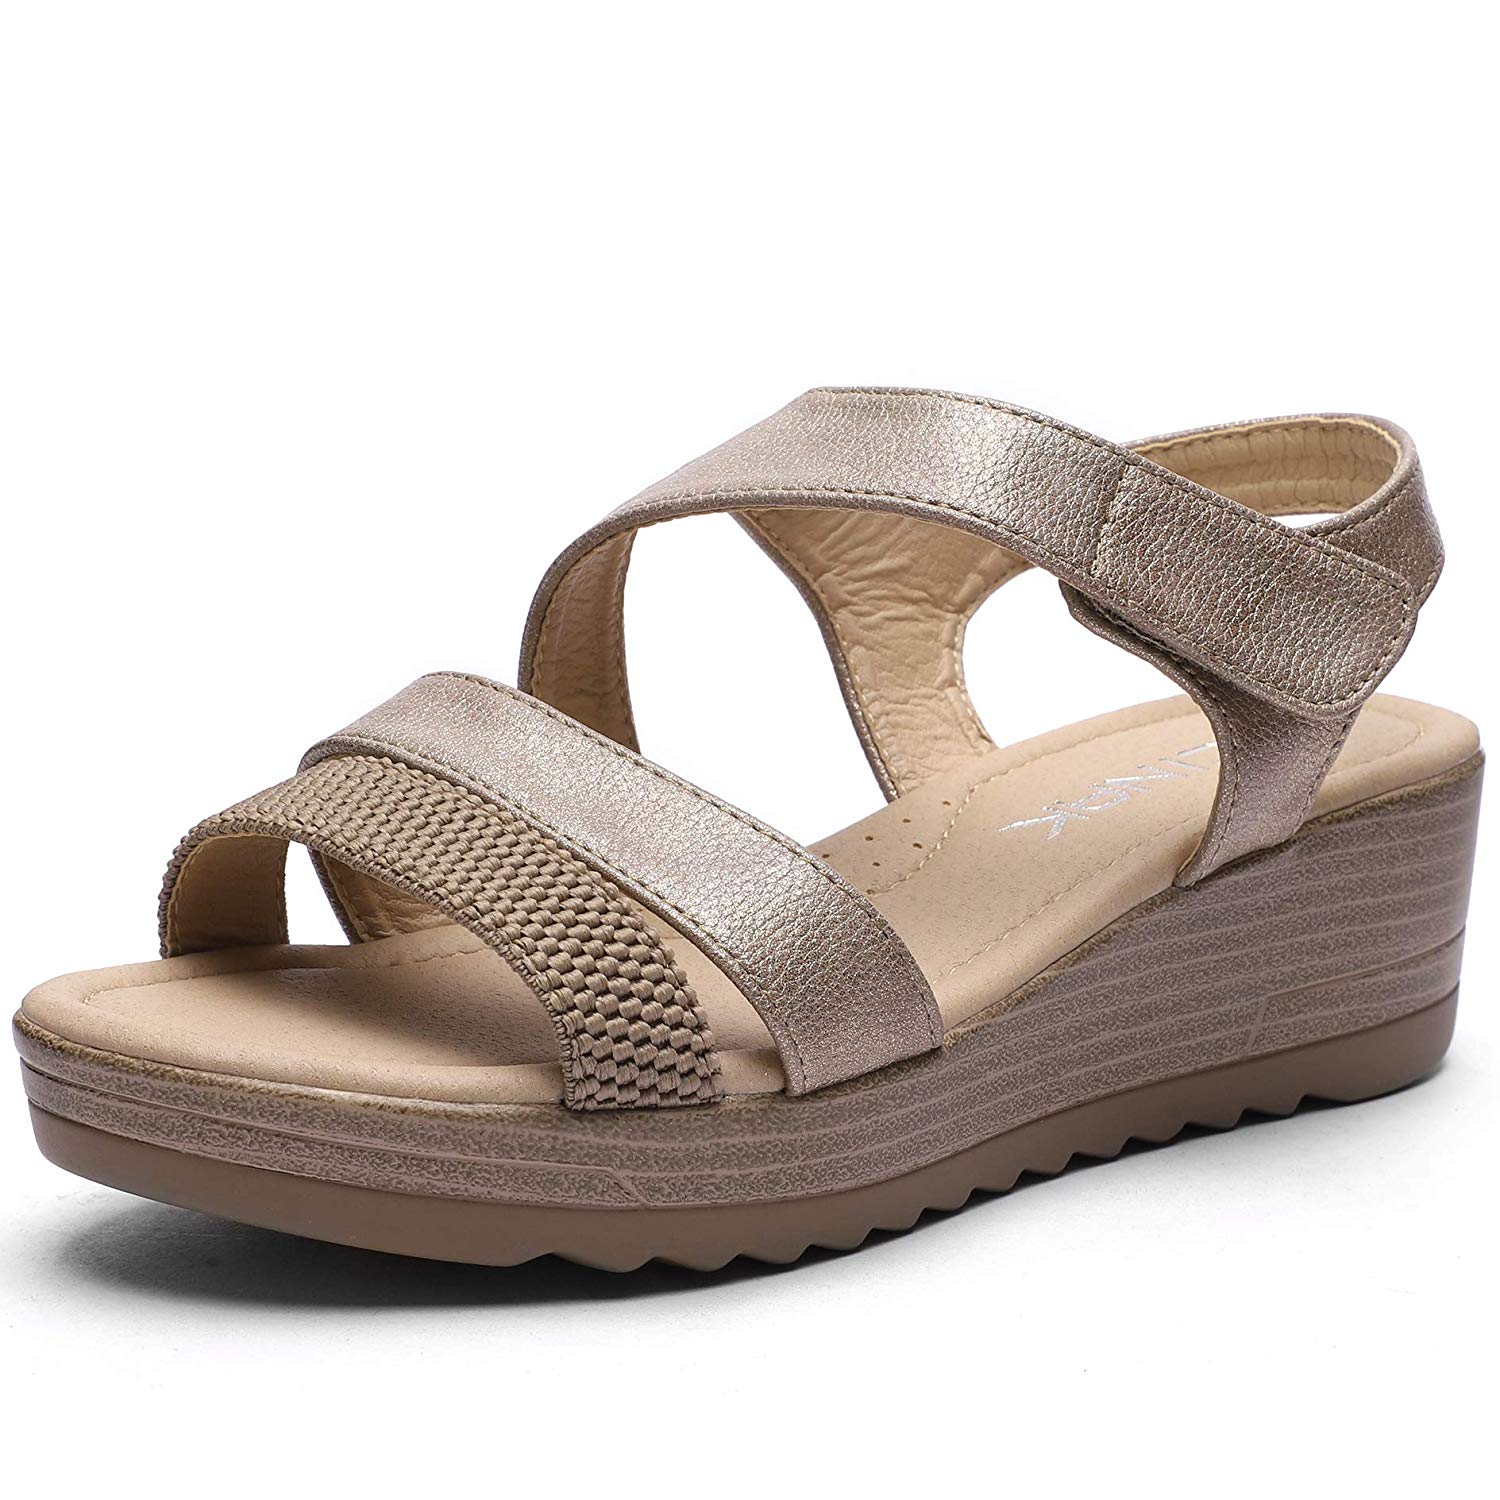 CINAK Women Wedge Sandals Comfort-Casual Open Toe Adjustable Comfort S ...